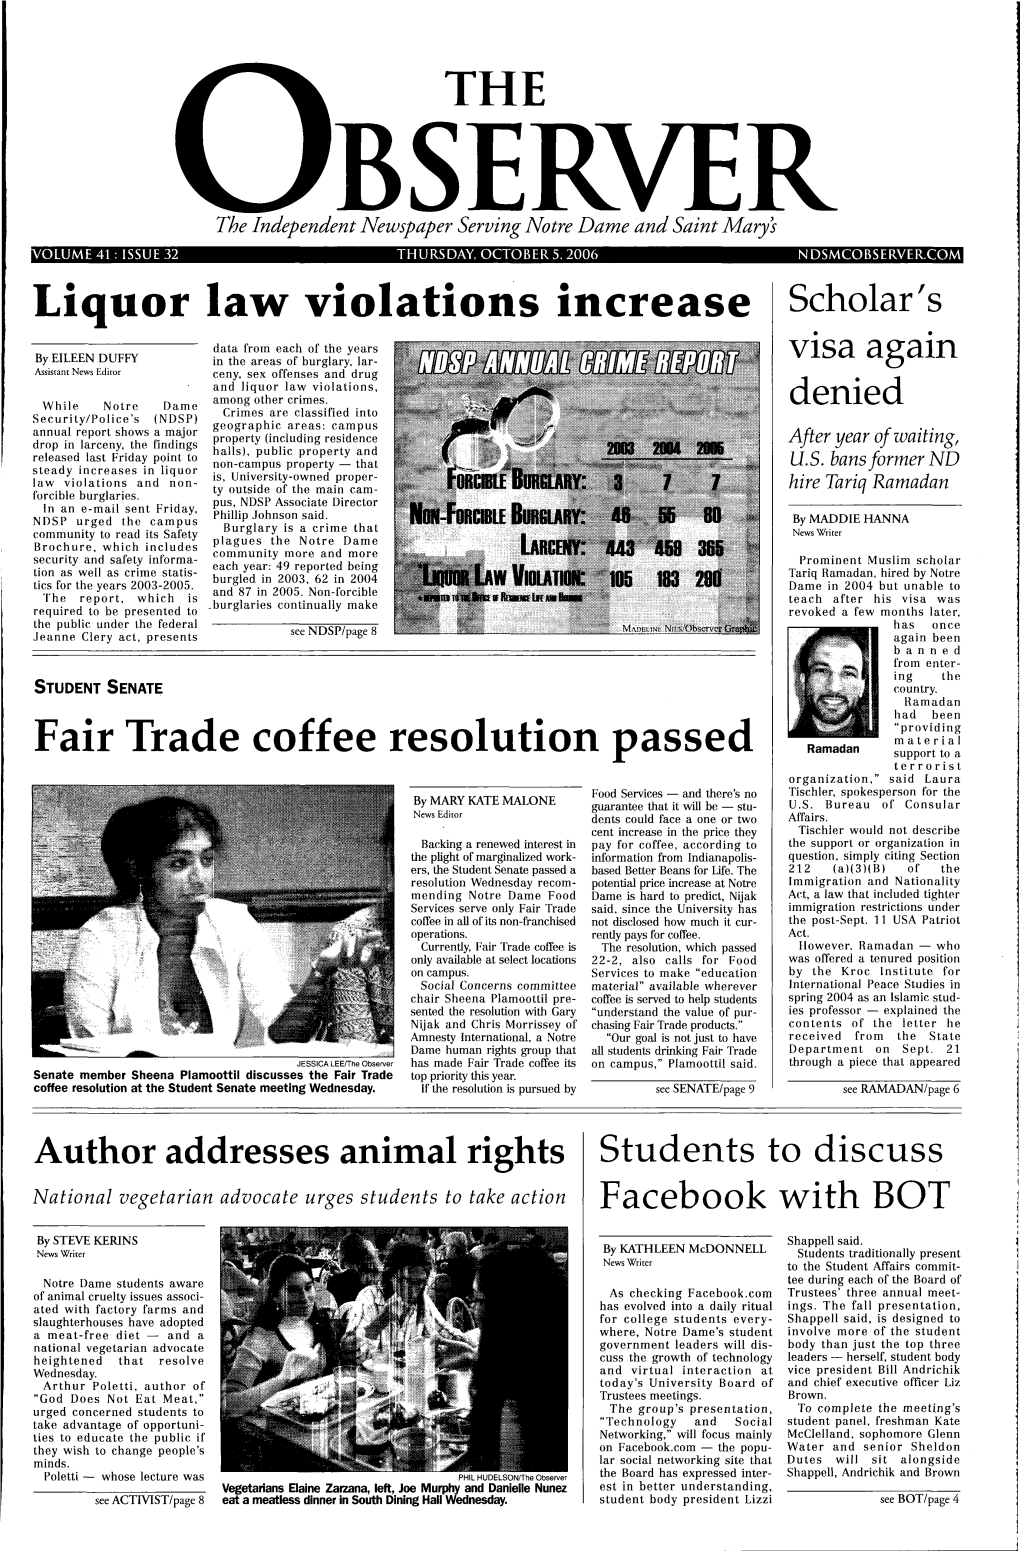 Liquor Law Violations Increase Scholar's